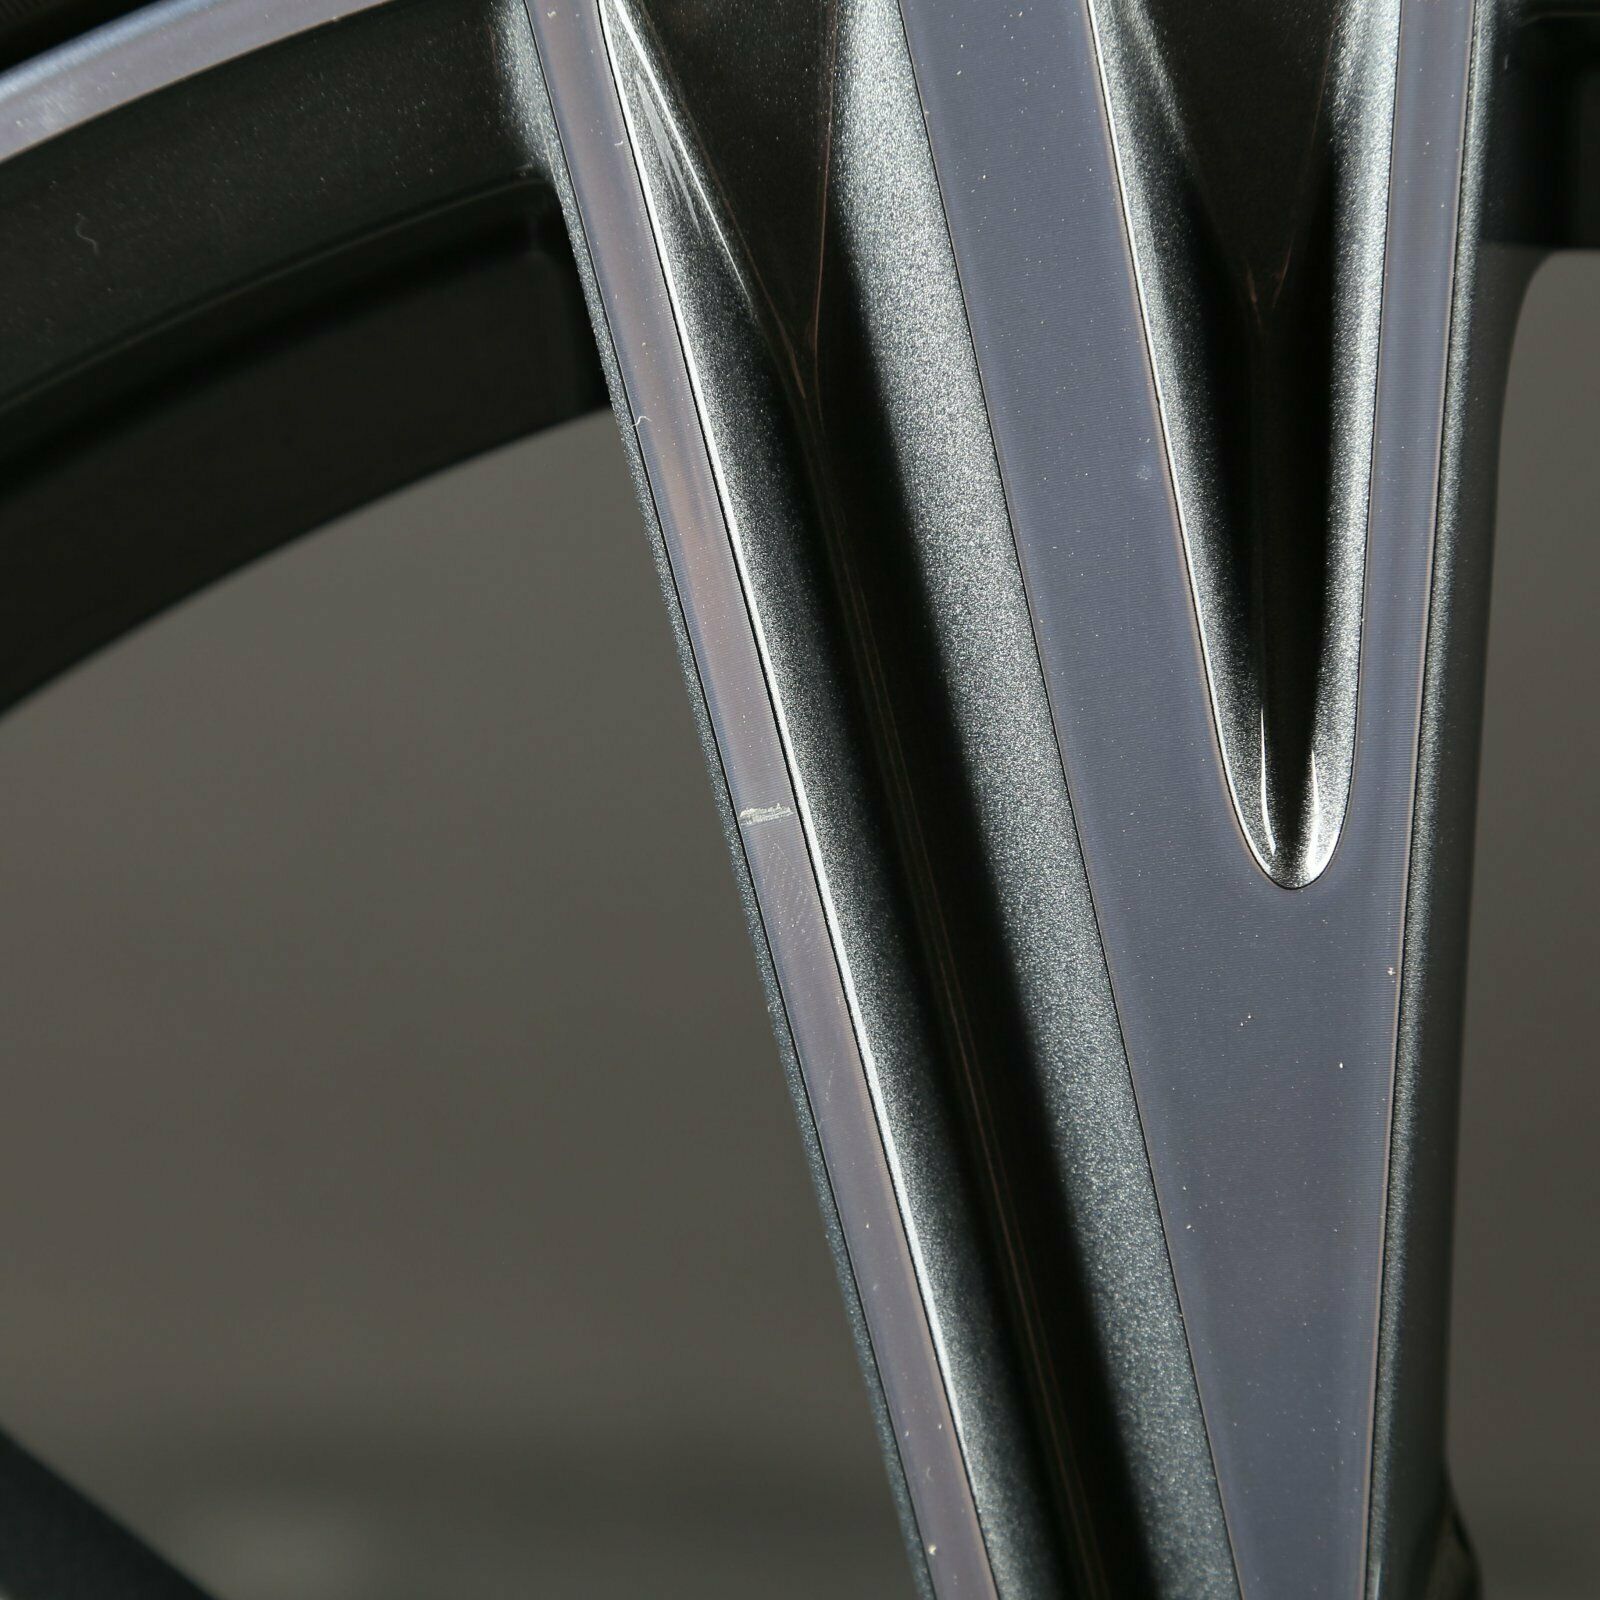 20 pouces roues d'hiver 4K0601025J original Audi A6 S6 4K F2 C8 S-Line jantes en aluminium